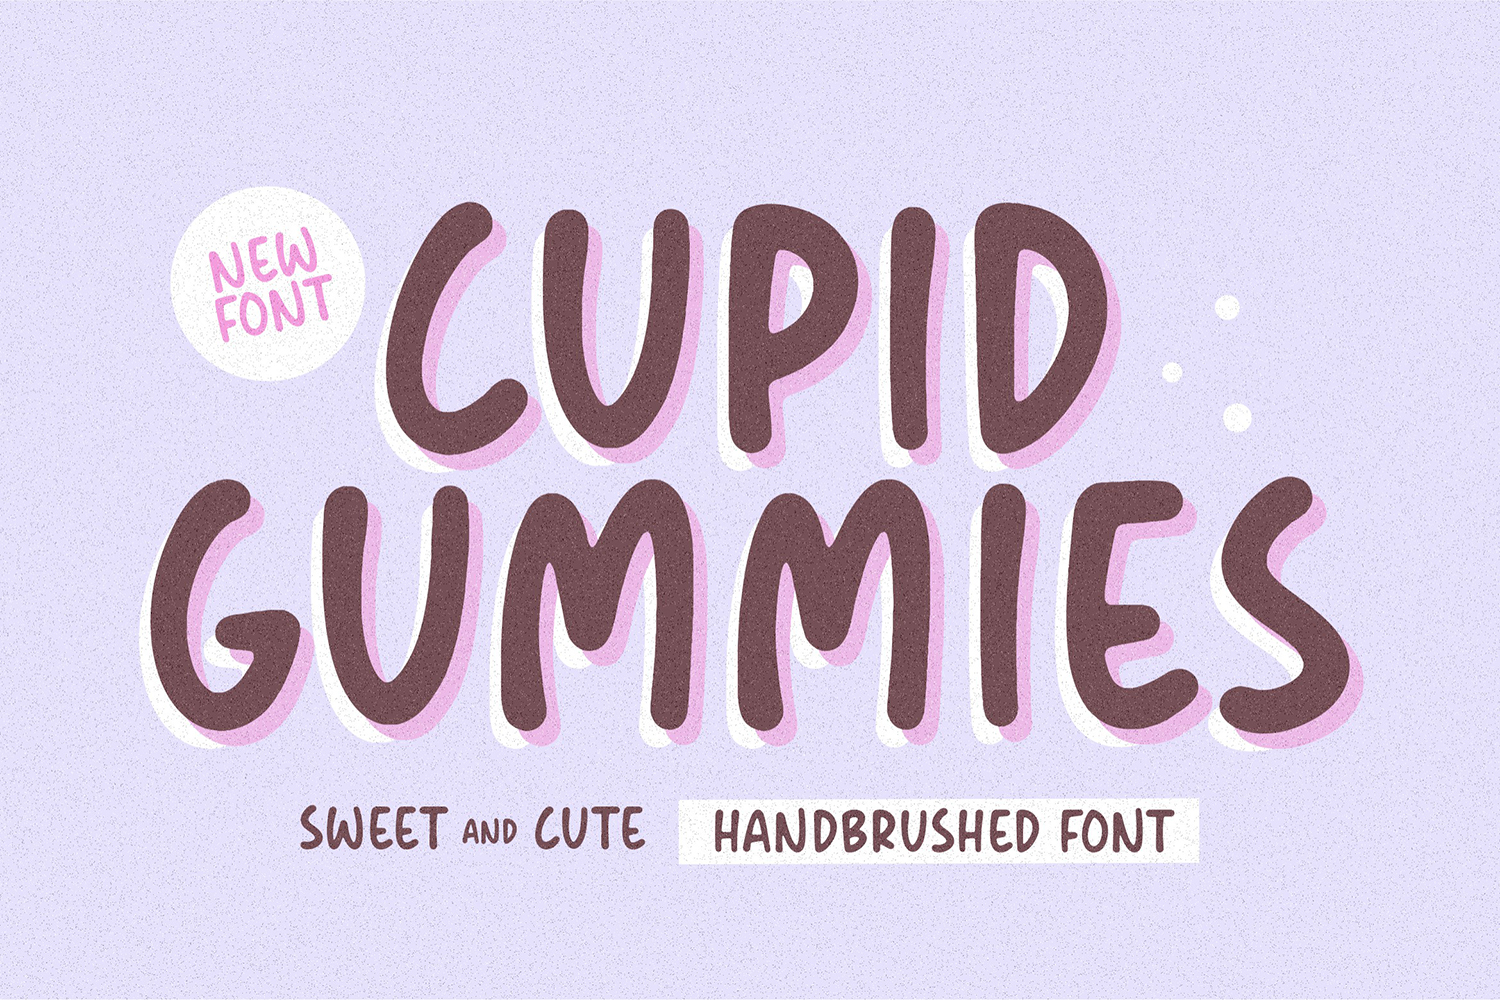 Cupid Gummies Free Font